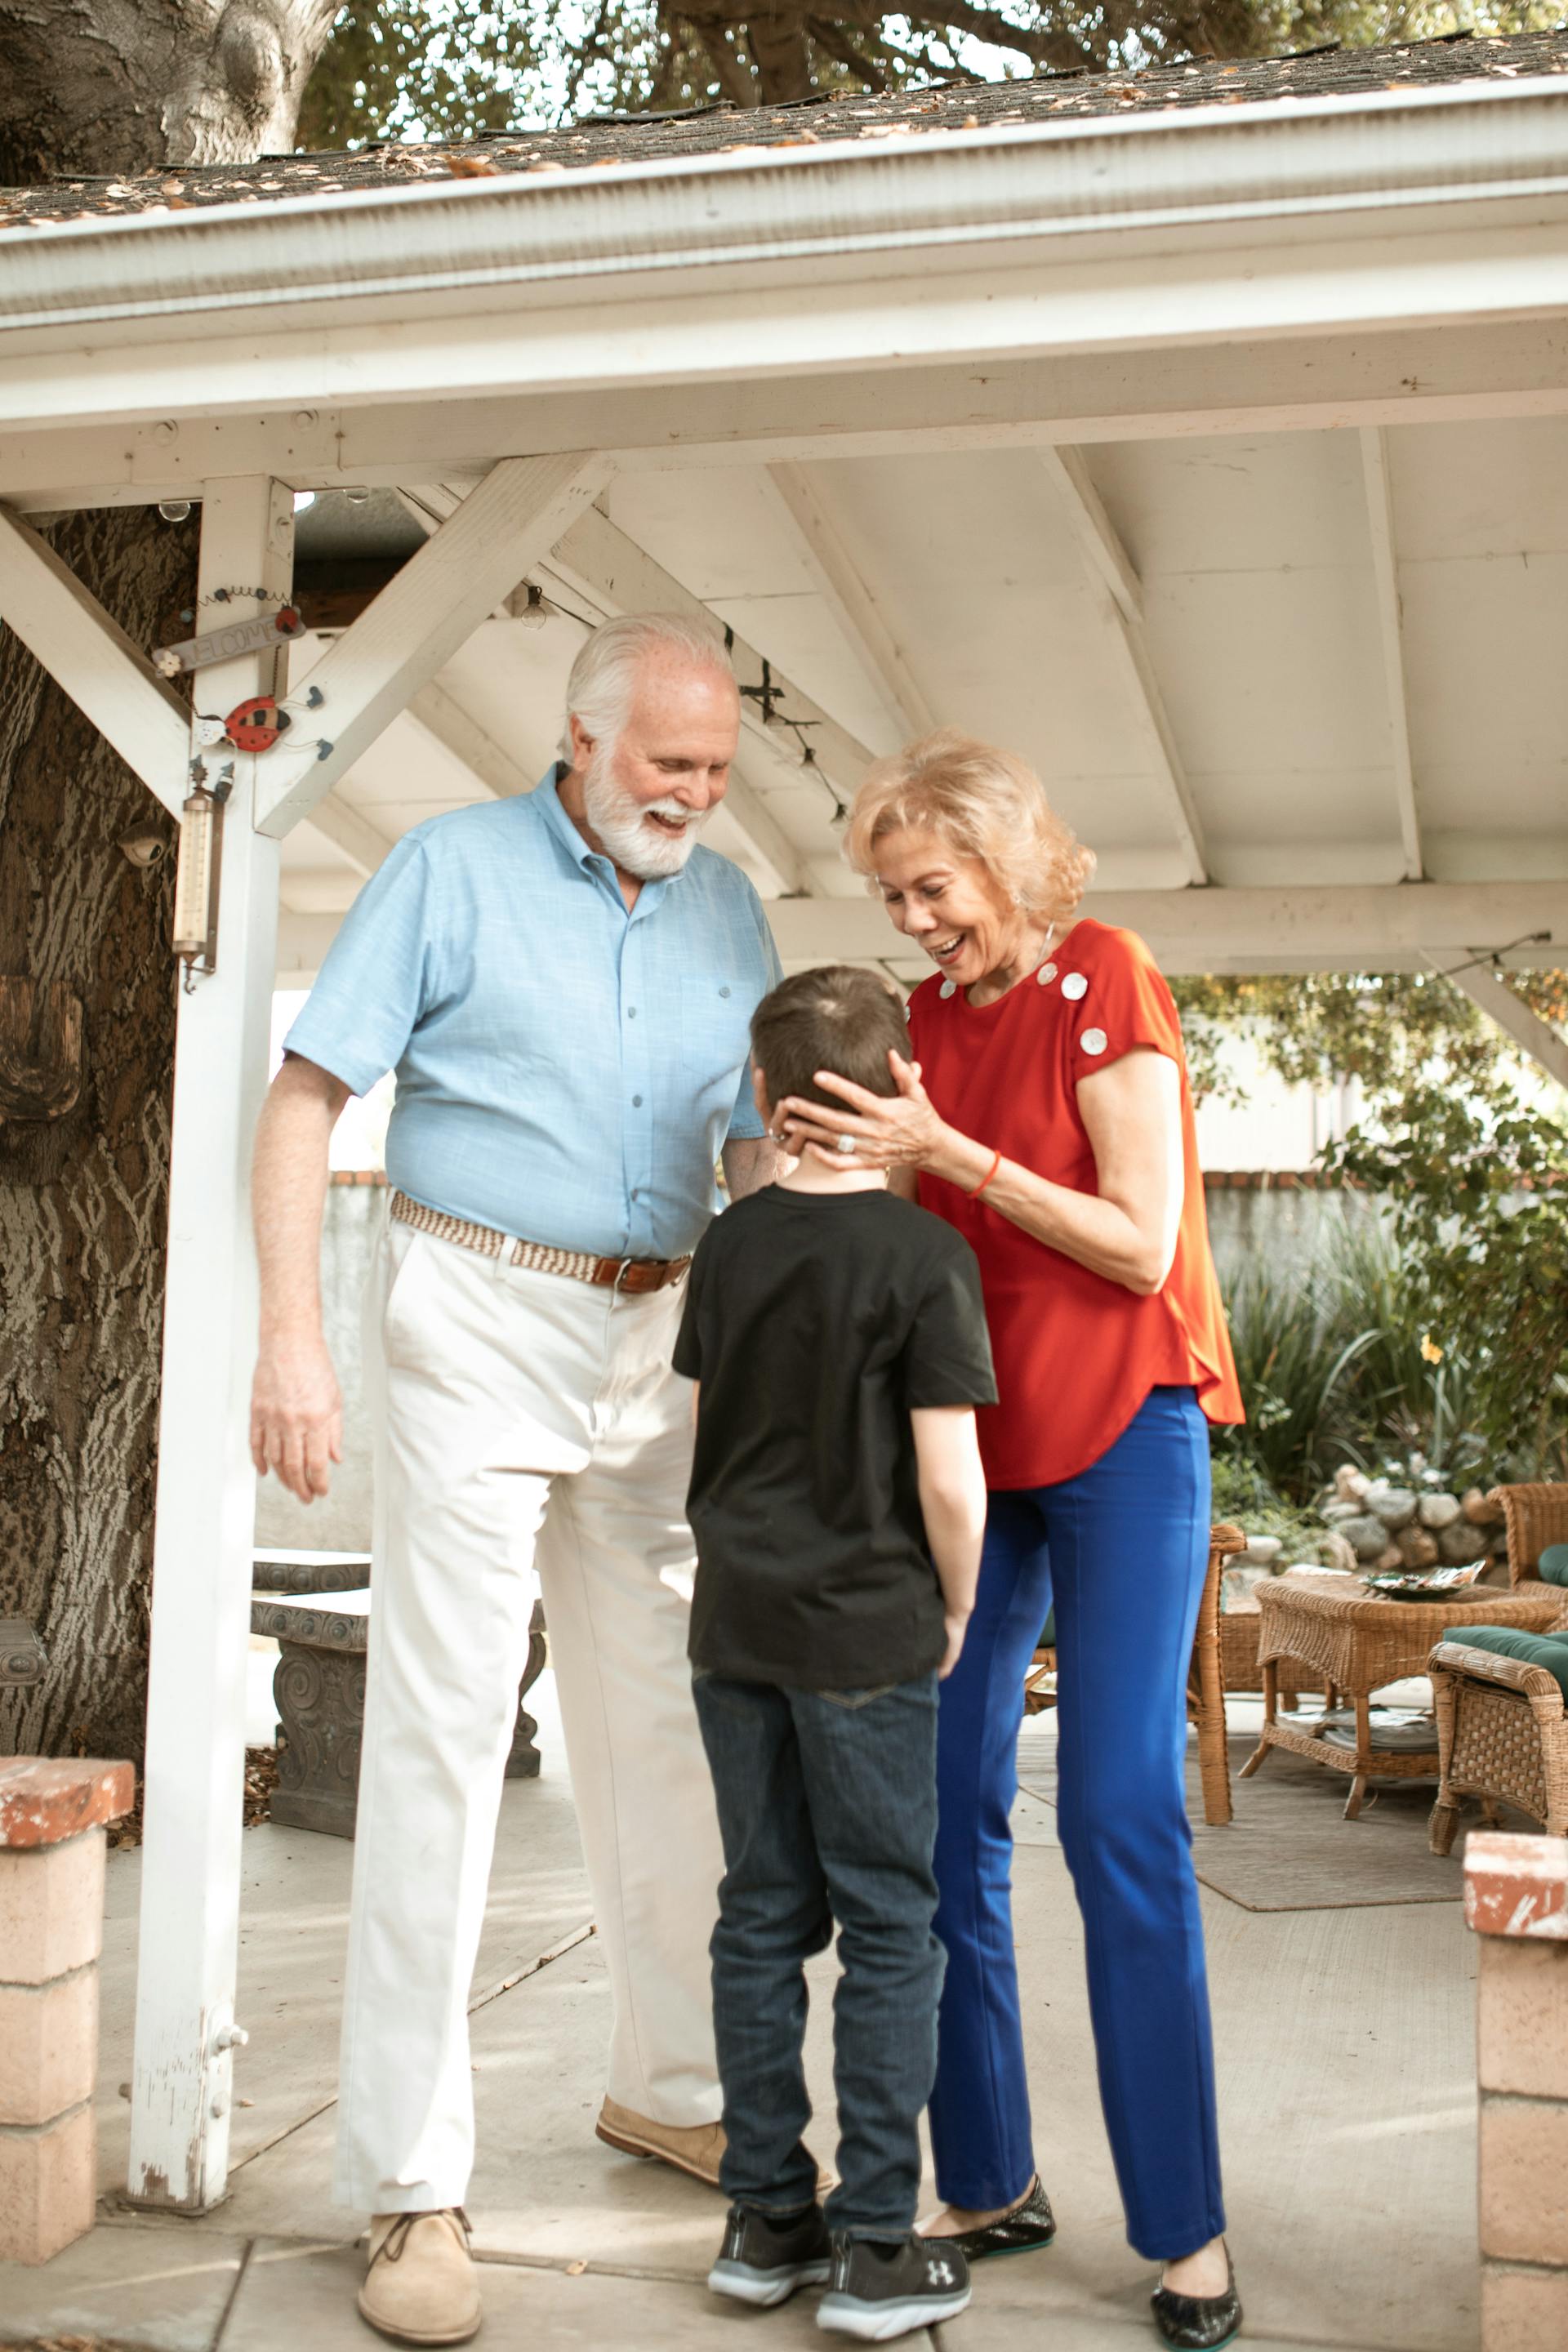 Großeltern im Gespräch mit ihrem Enkel | Quelle: Pexels